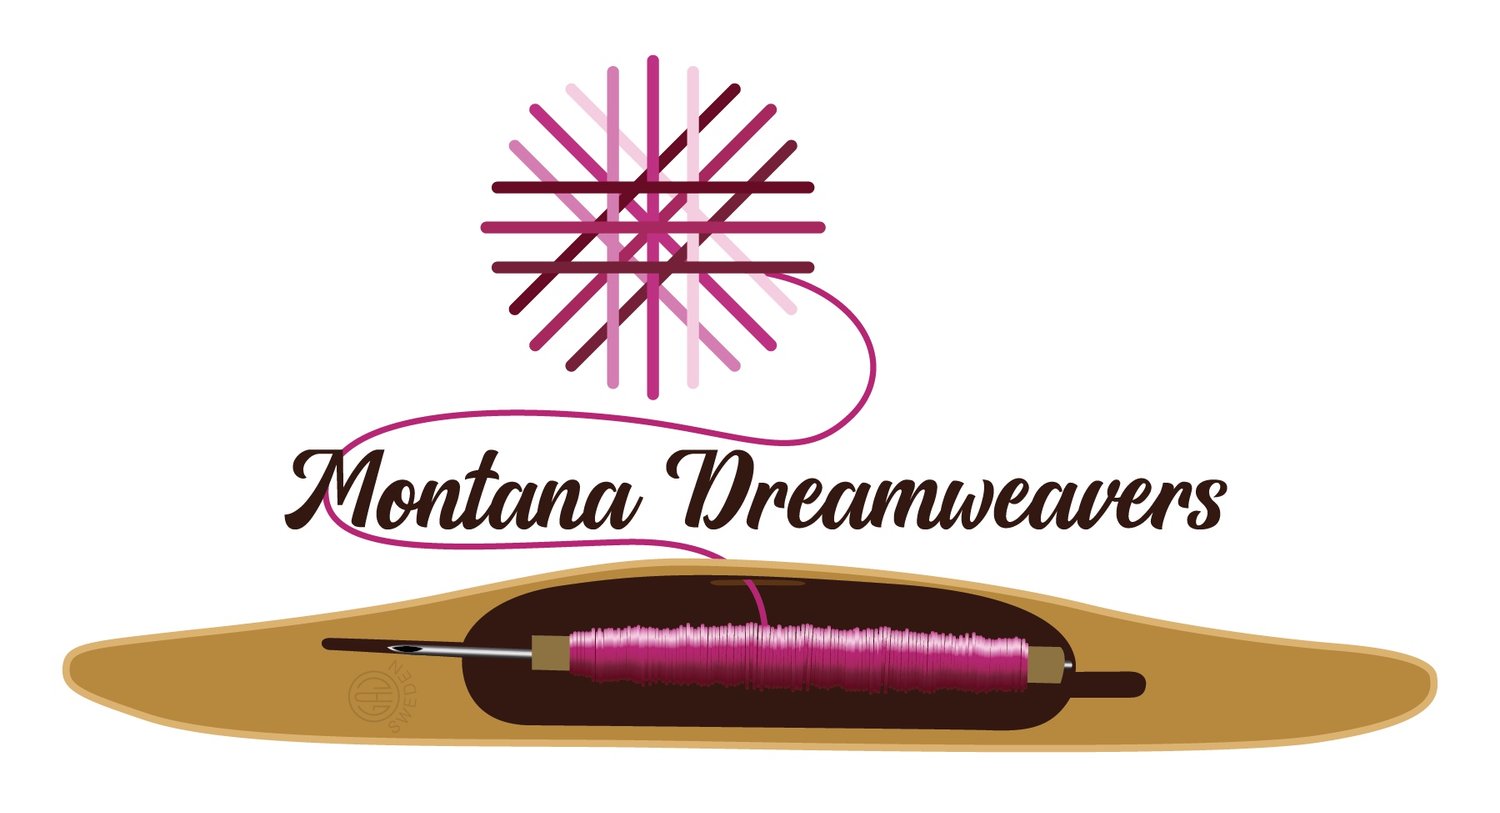 Montana Dreamweaver&#39;s